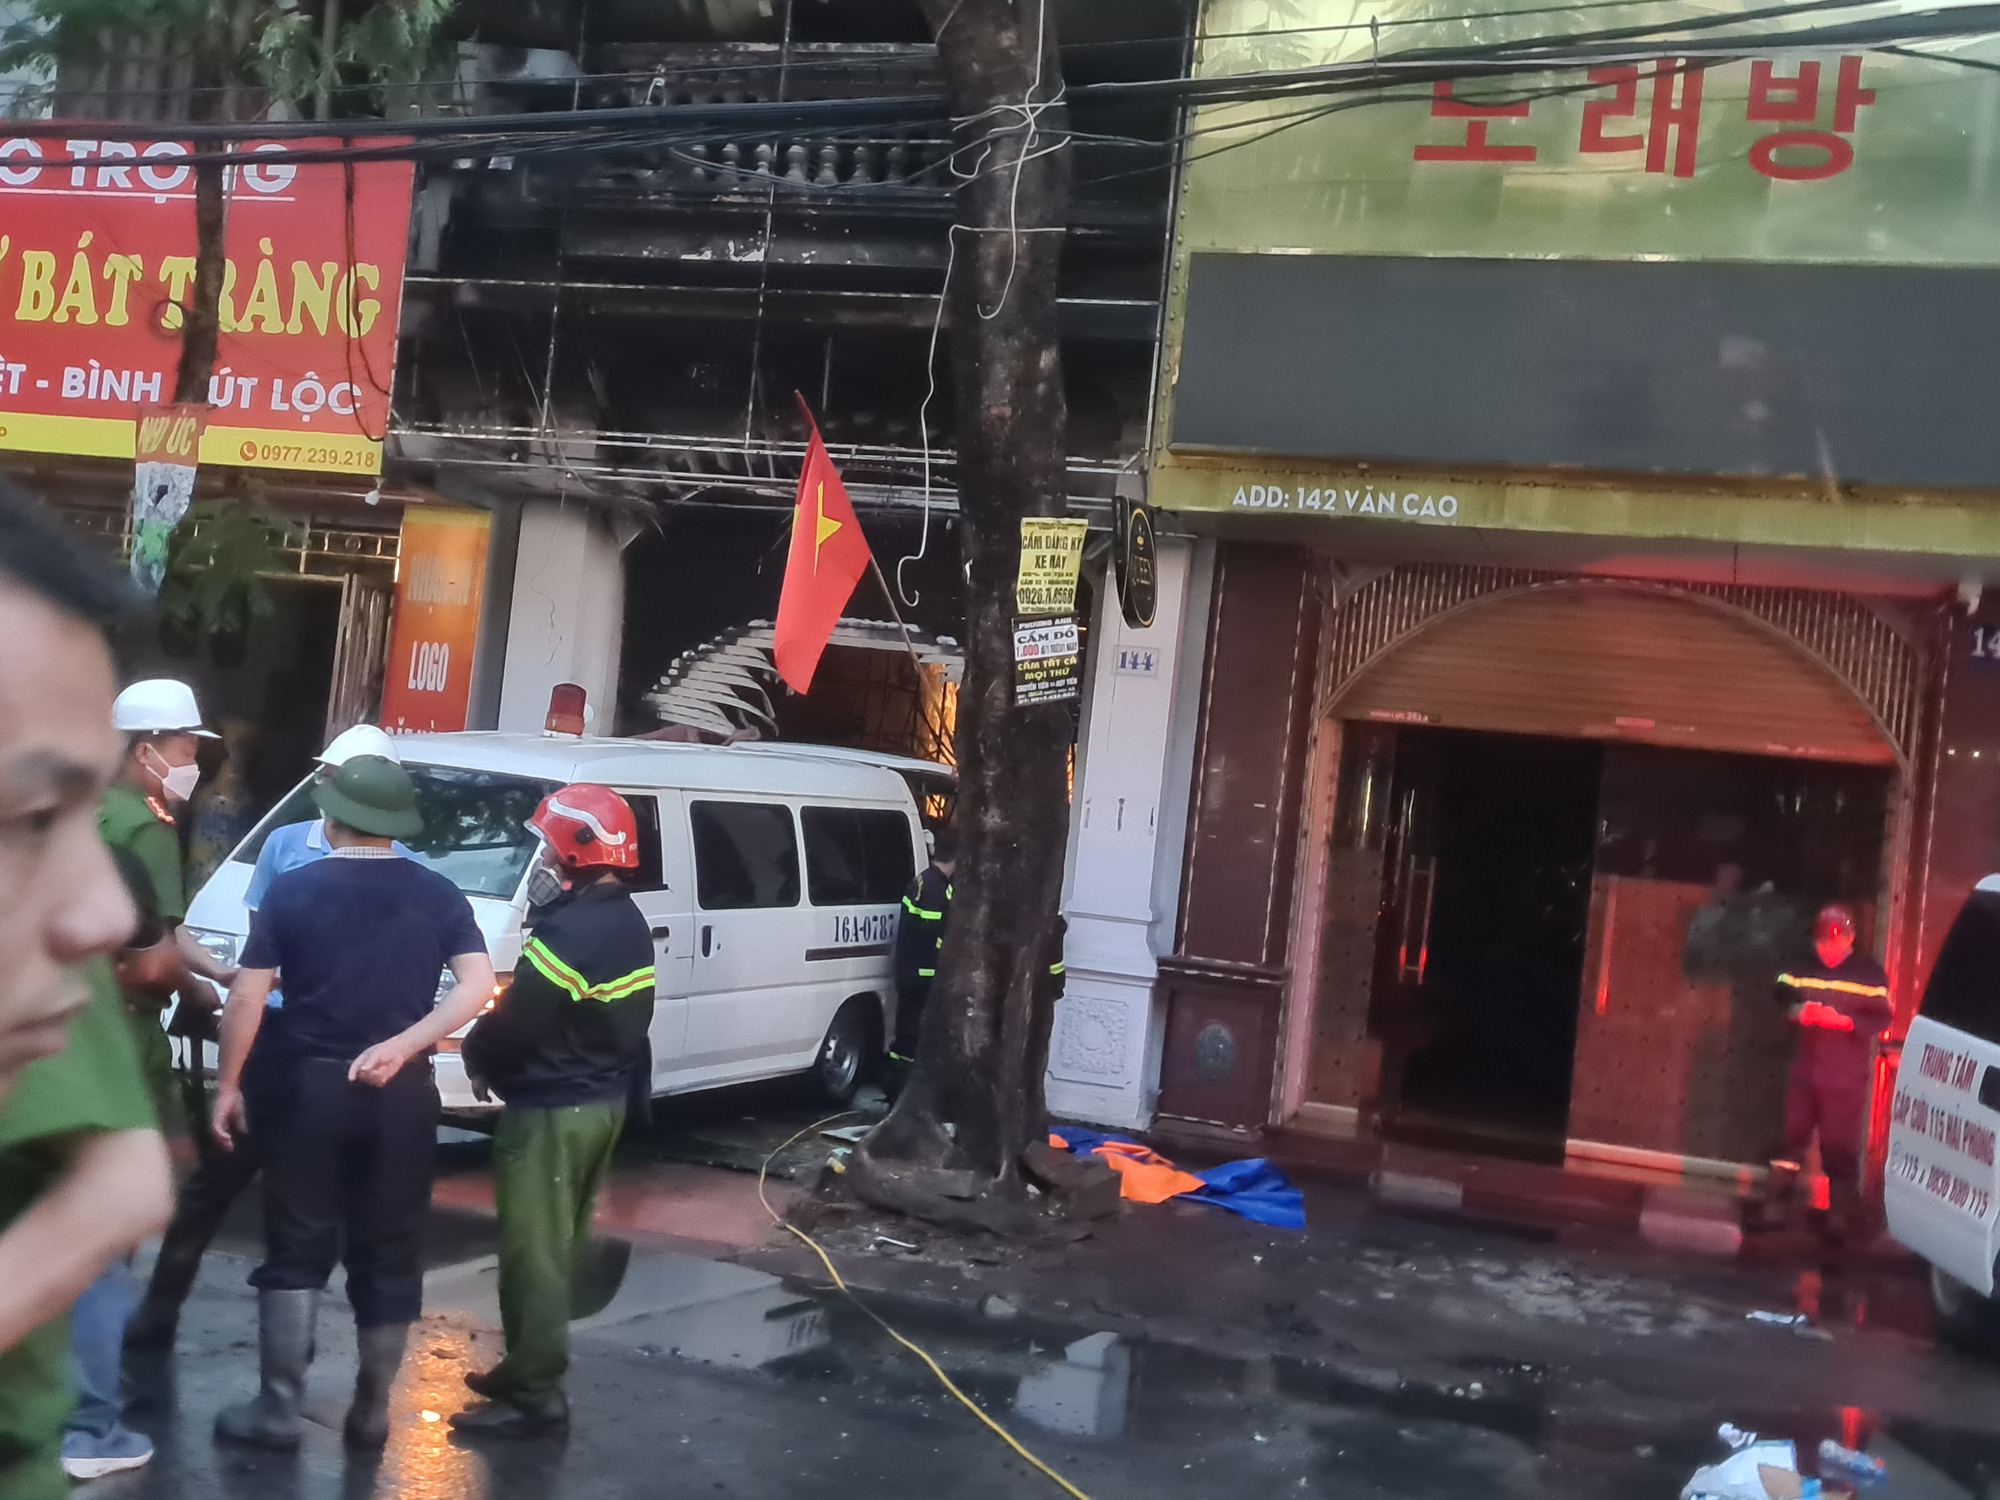 Hải Phòng: Cháy lớn tại phố Văn Cao, nhiều người mắc kẹt bên trong - Ảnh 4.